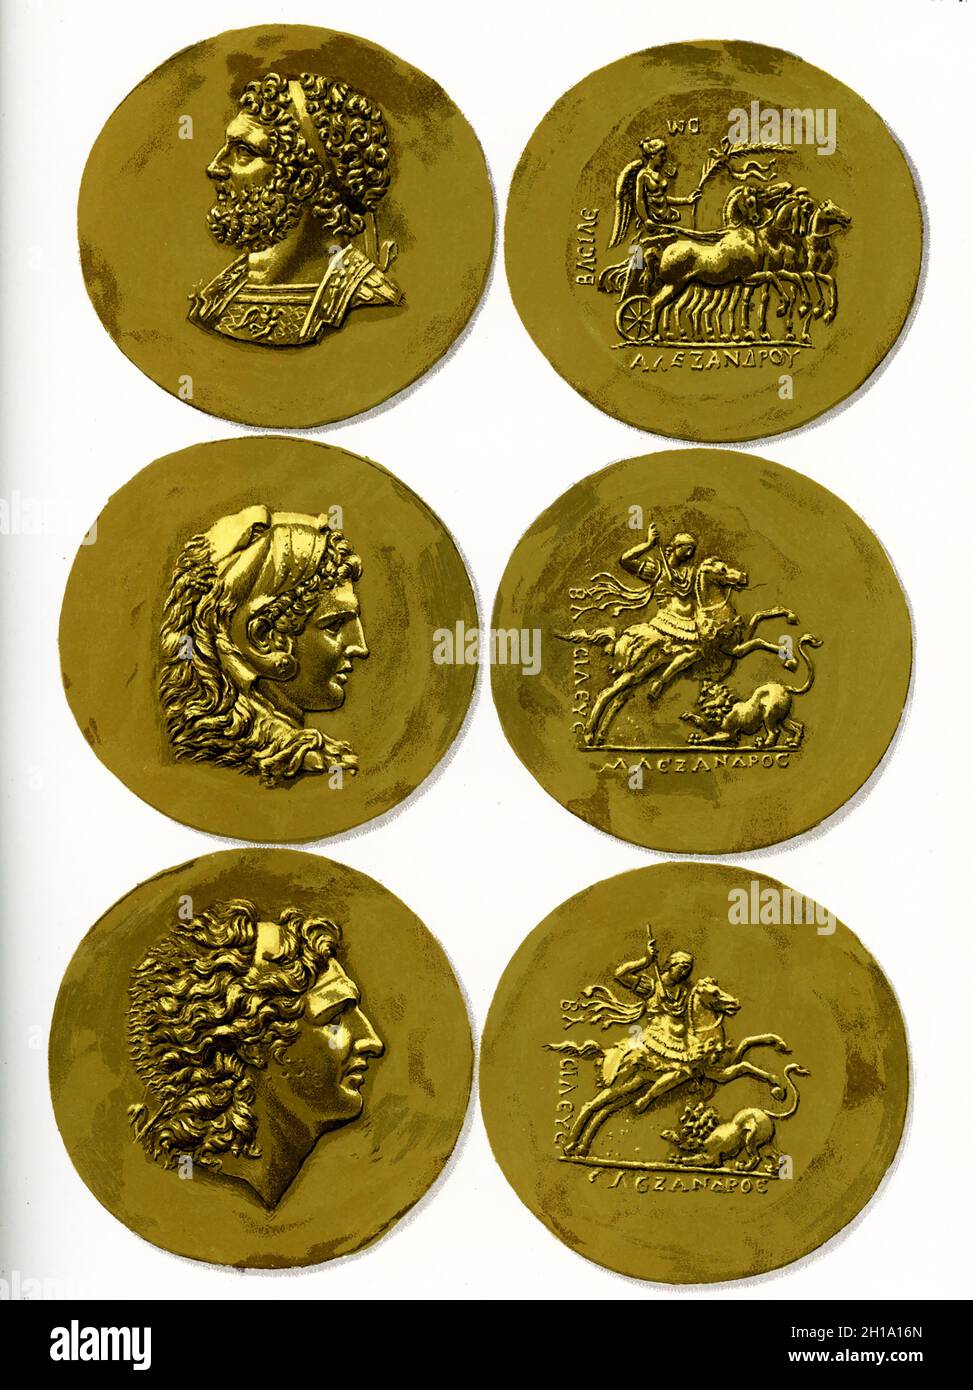 La didascalia per questa immagine recita: Tesoro da Tarso. Monete d'oro di Alessandro, Filippo II ed Ercole incise durante il regno di Alessandro Severo (222-235 d.C.). Foto Stock